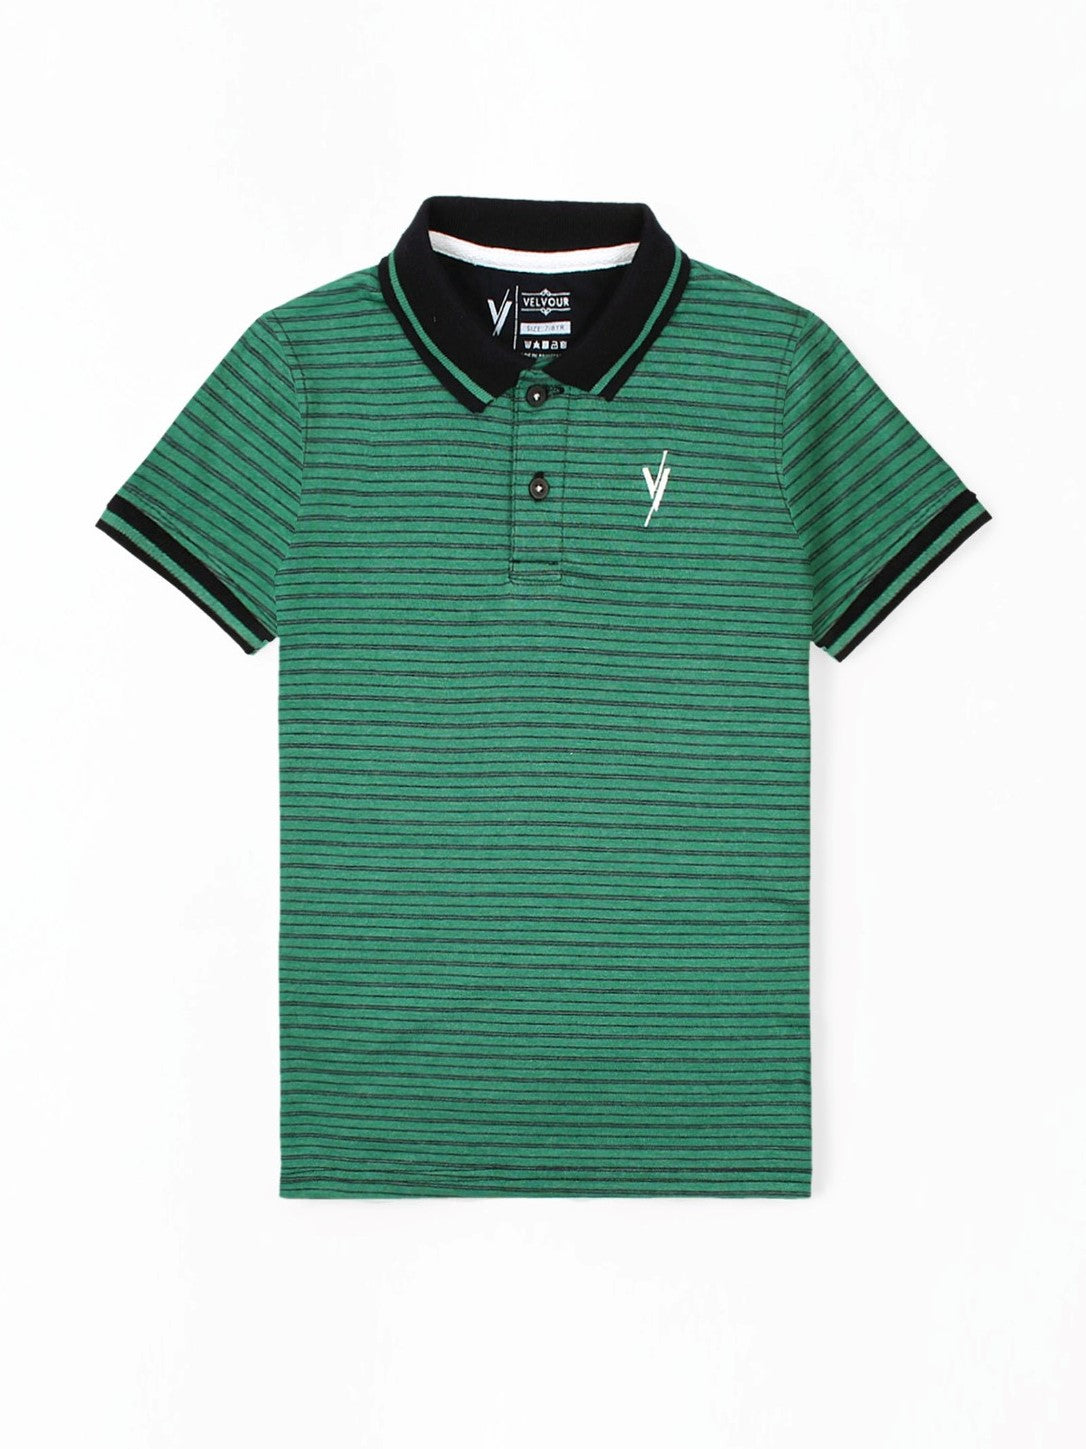 Black Collar Polo Shirt For Boys Green